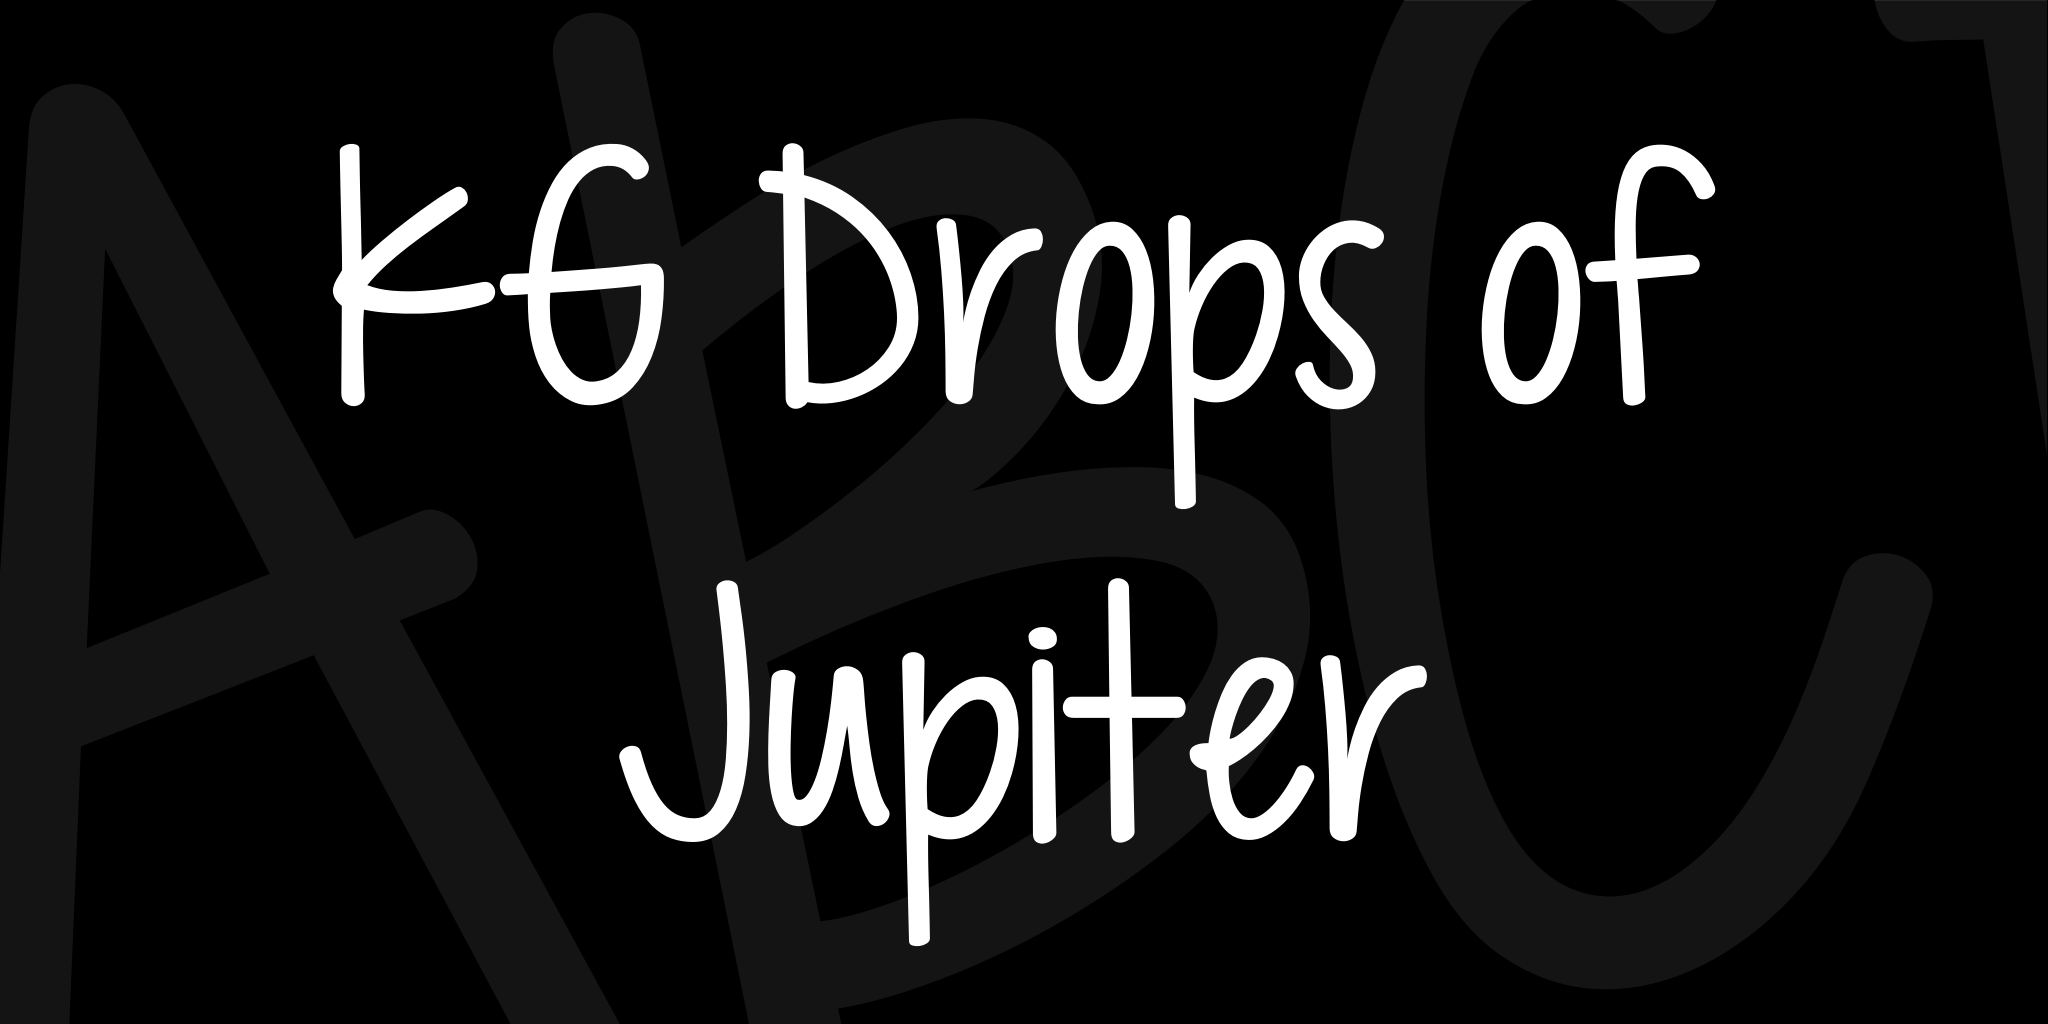 Kg Drops Of Jupiter